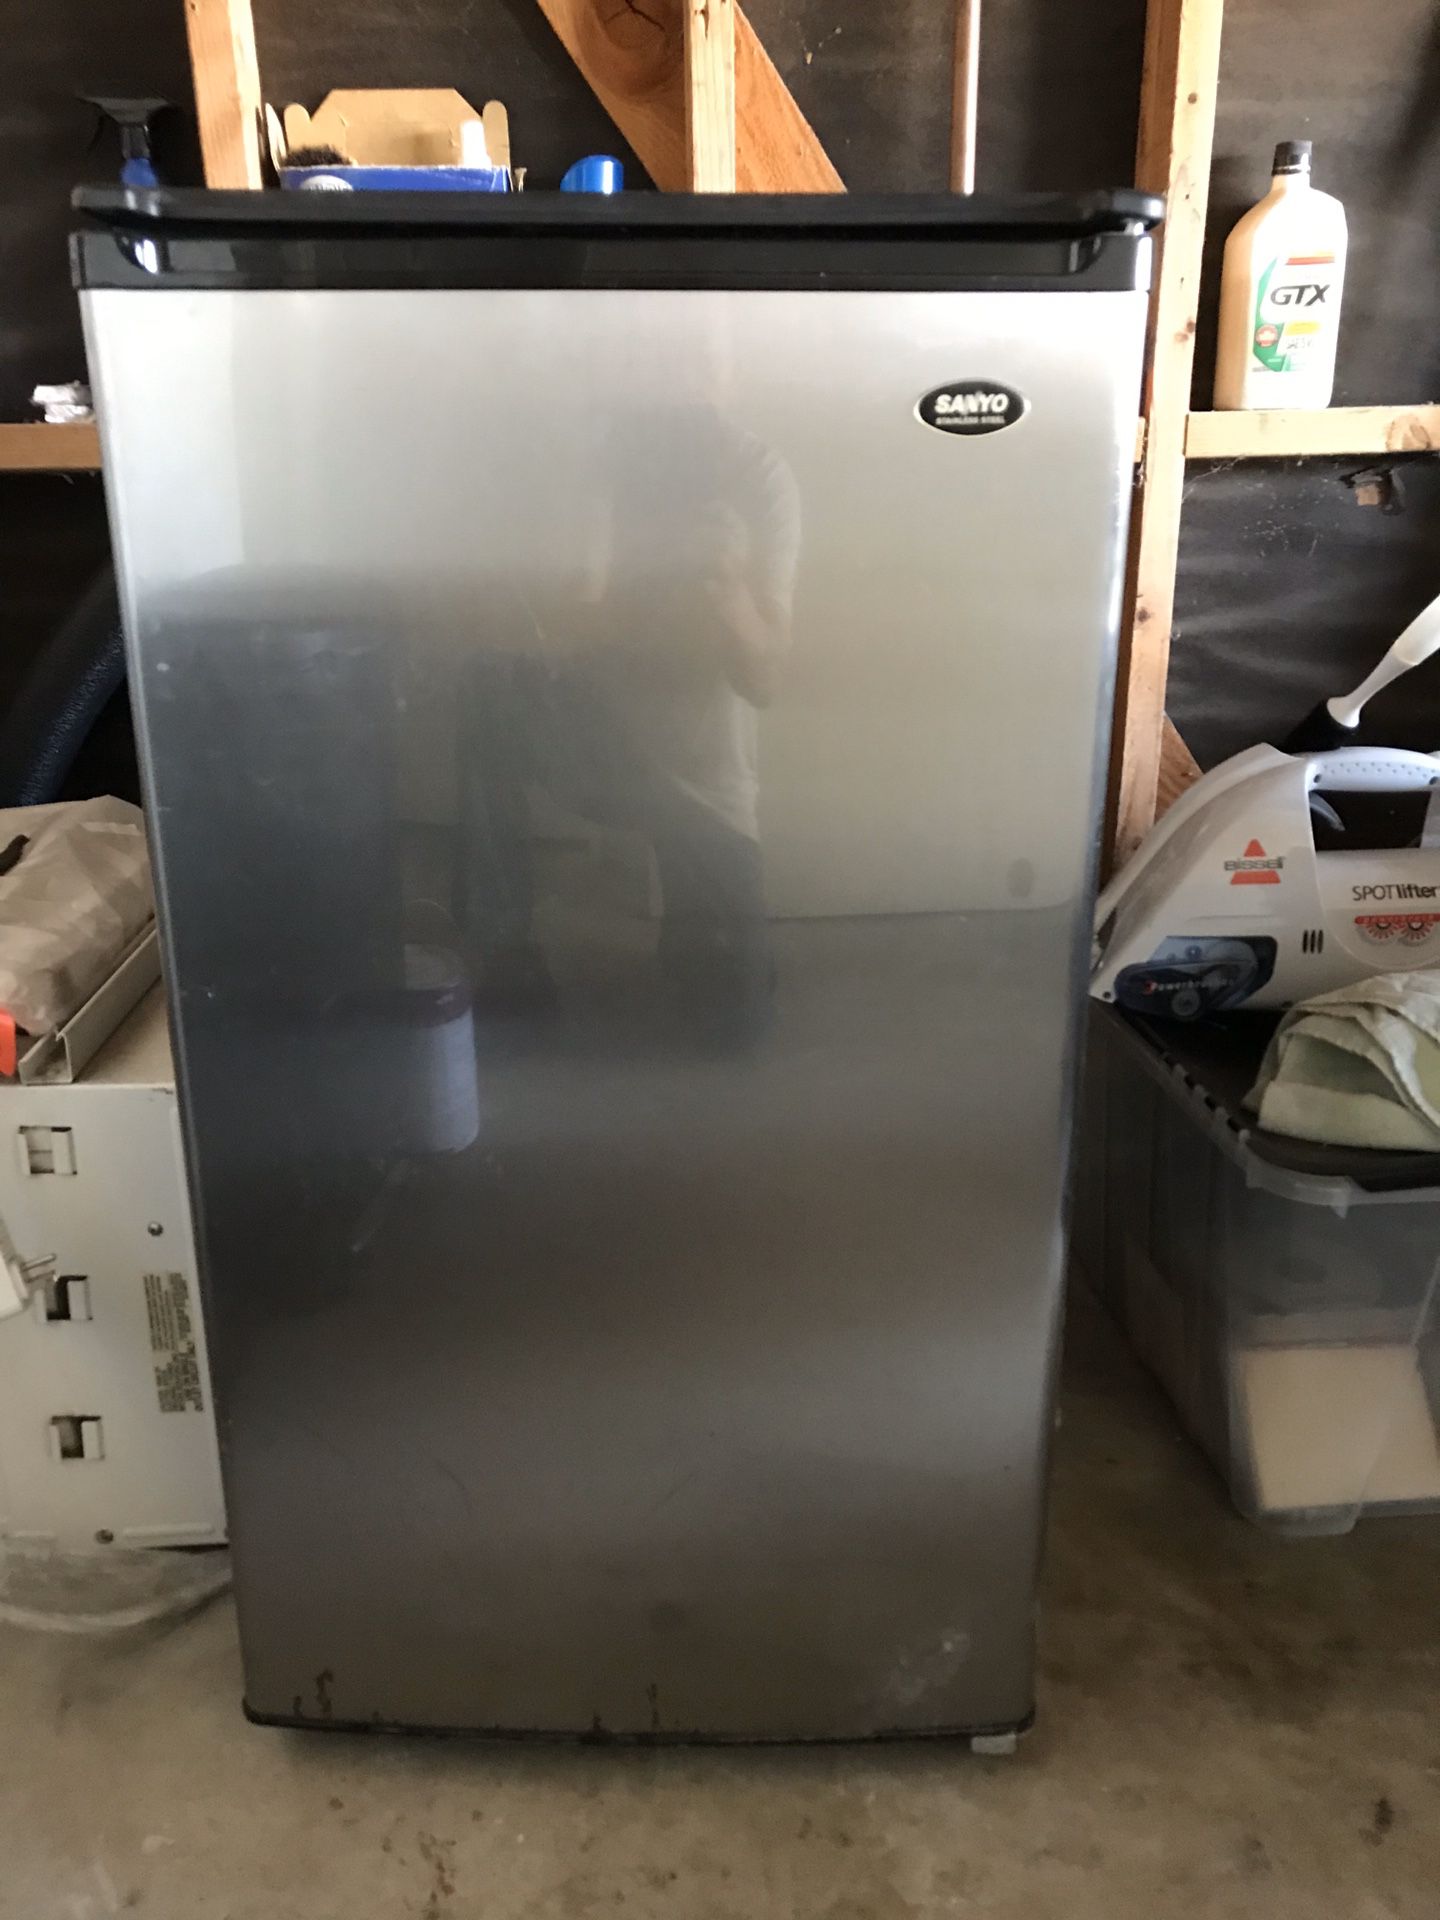 Used (normal wear) SANYO Sanyo SR-3720M Counter-High Refrigerator - $100 (Mira Mesa)